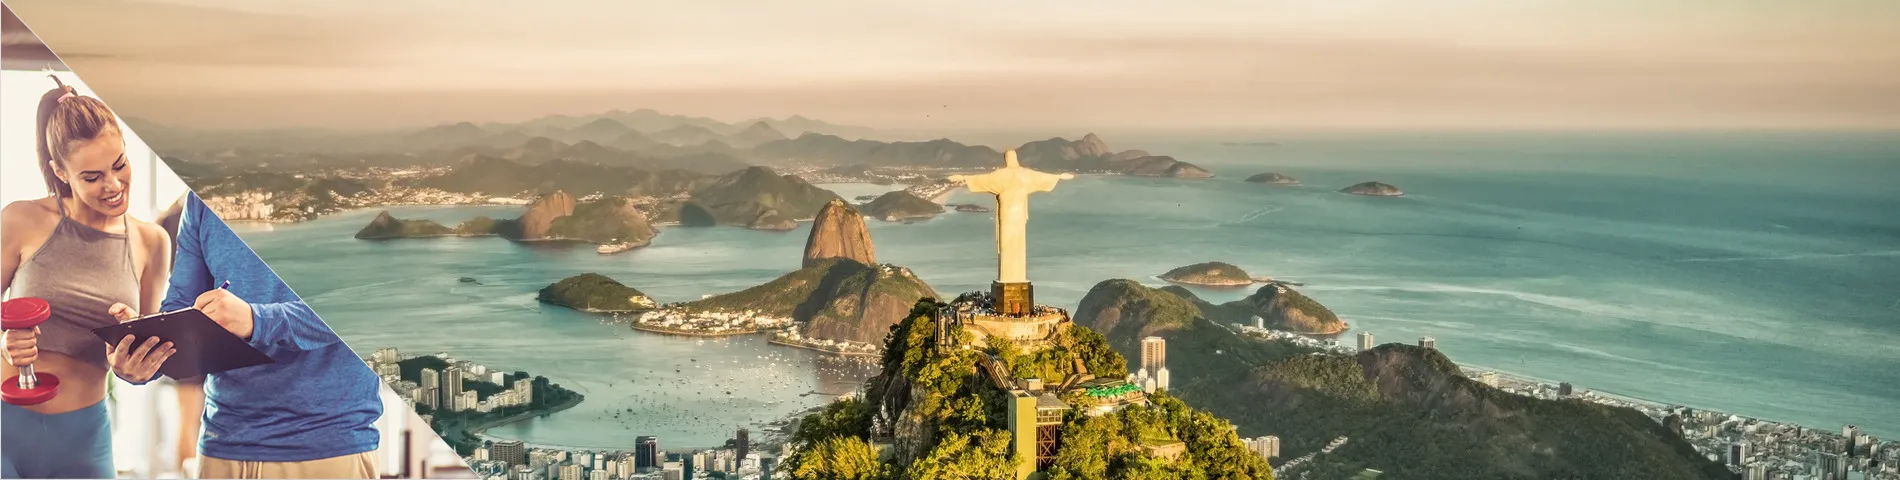 Rio de Janeiro - 